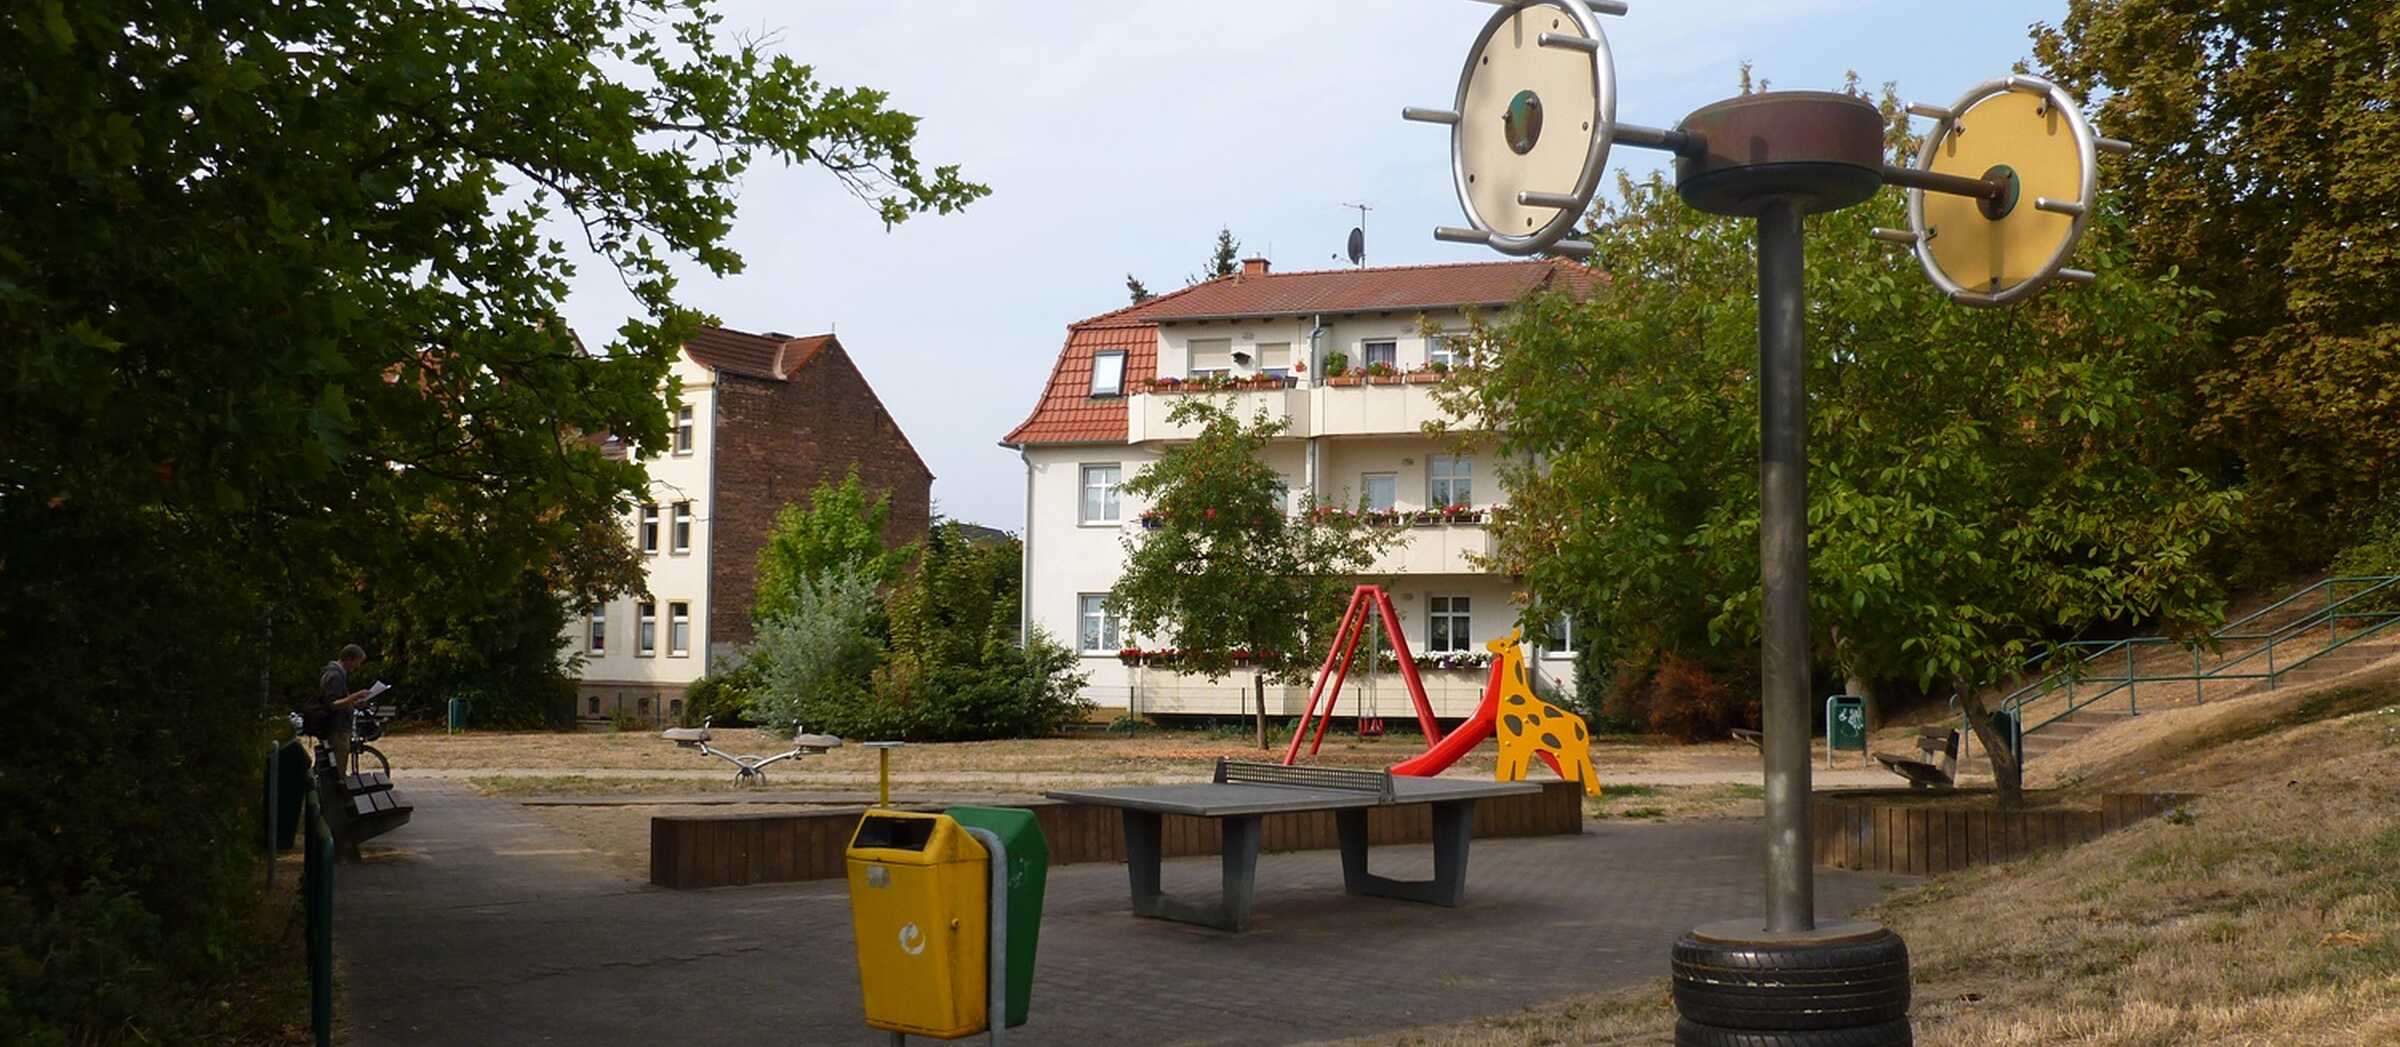 Spielplatz Gustav-Schmidt-Platz